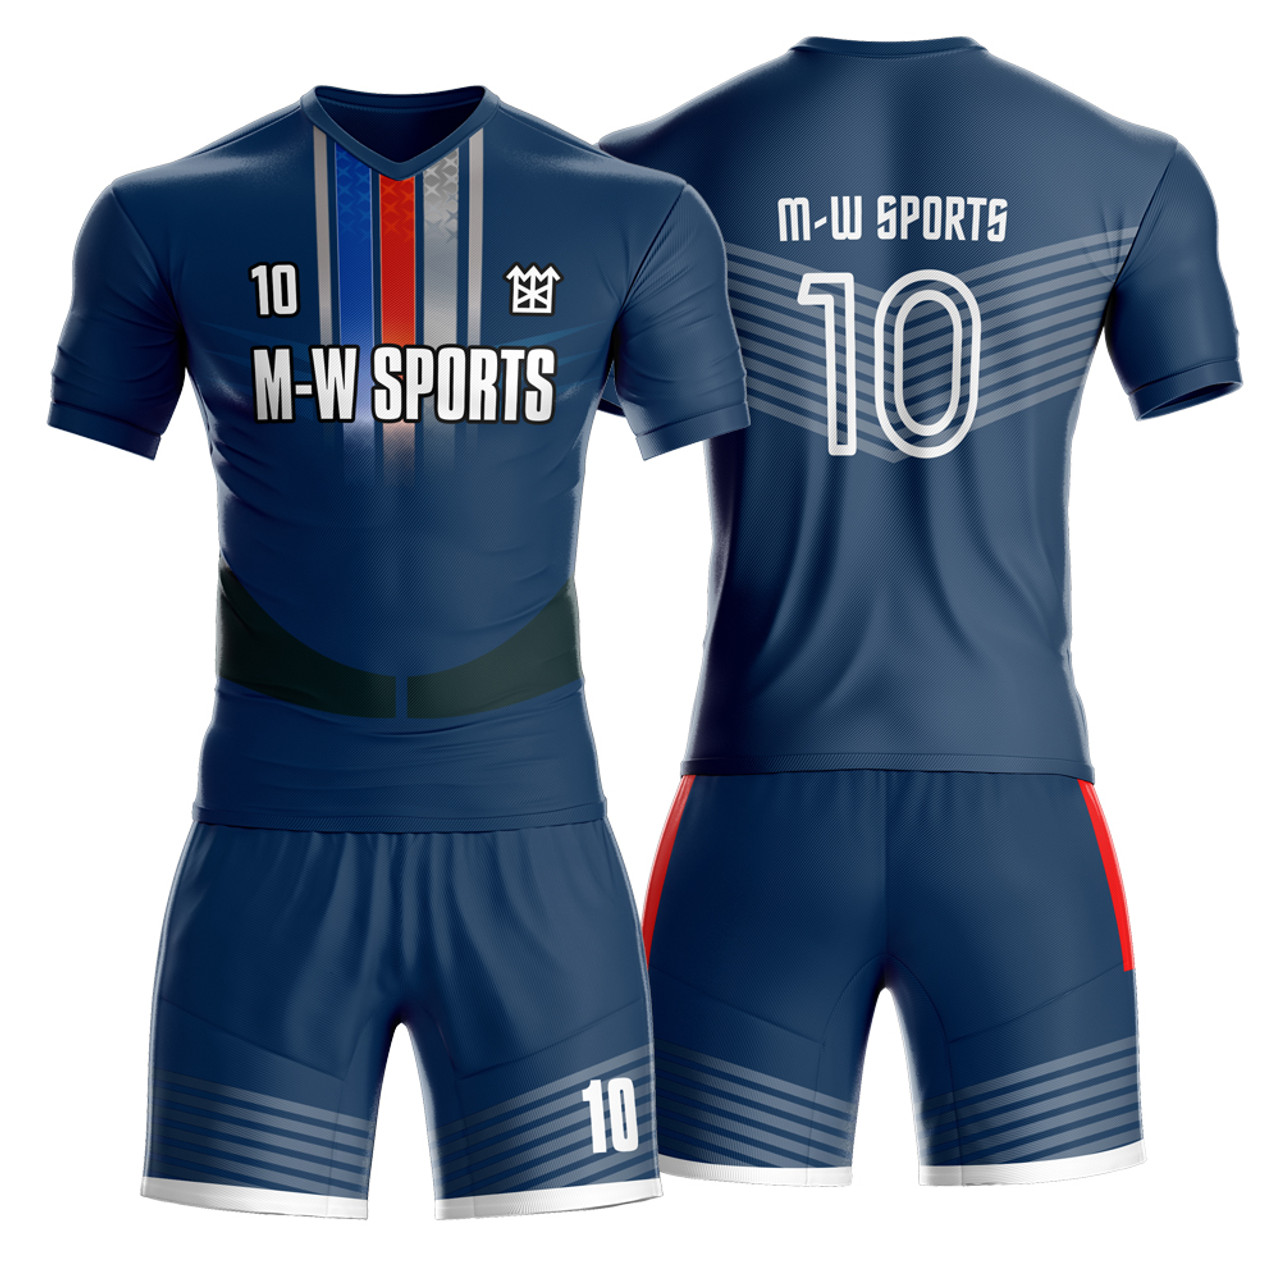 Sprinklecart Multicolor New Custom Design Football Jersey - Light Dark Blue  Mix Pattern